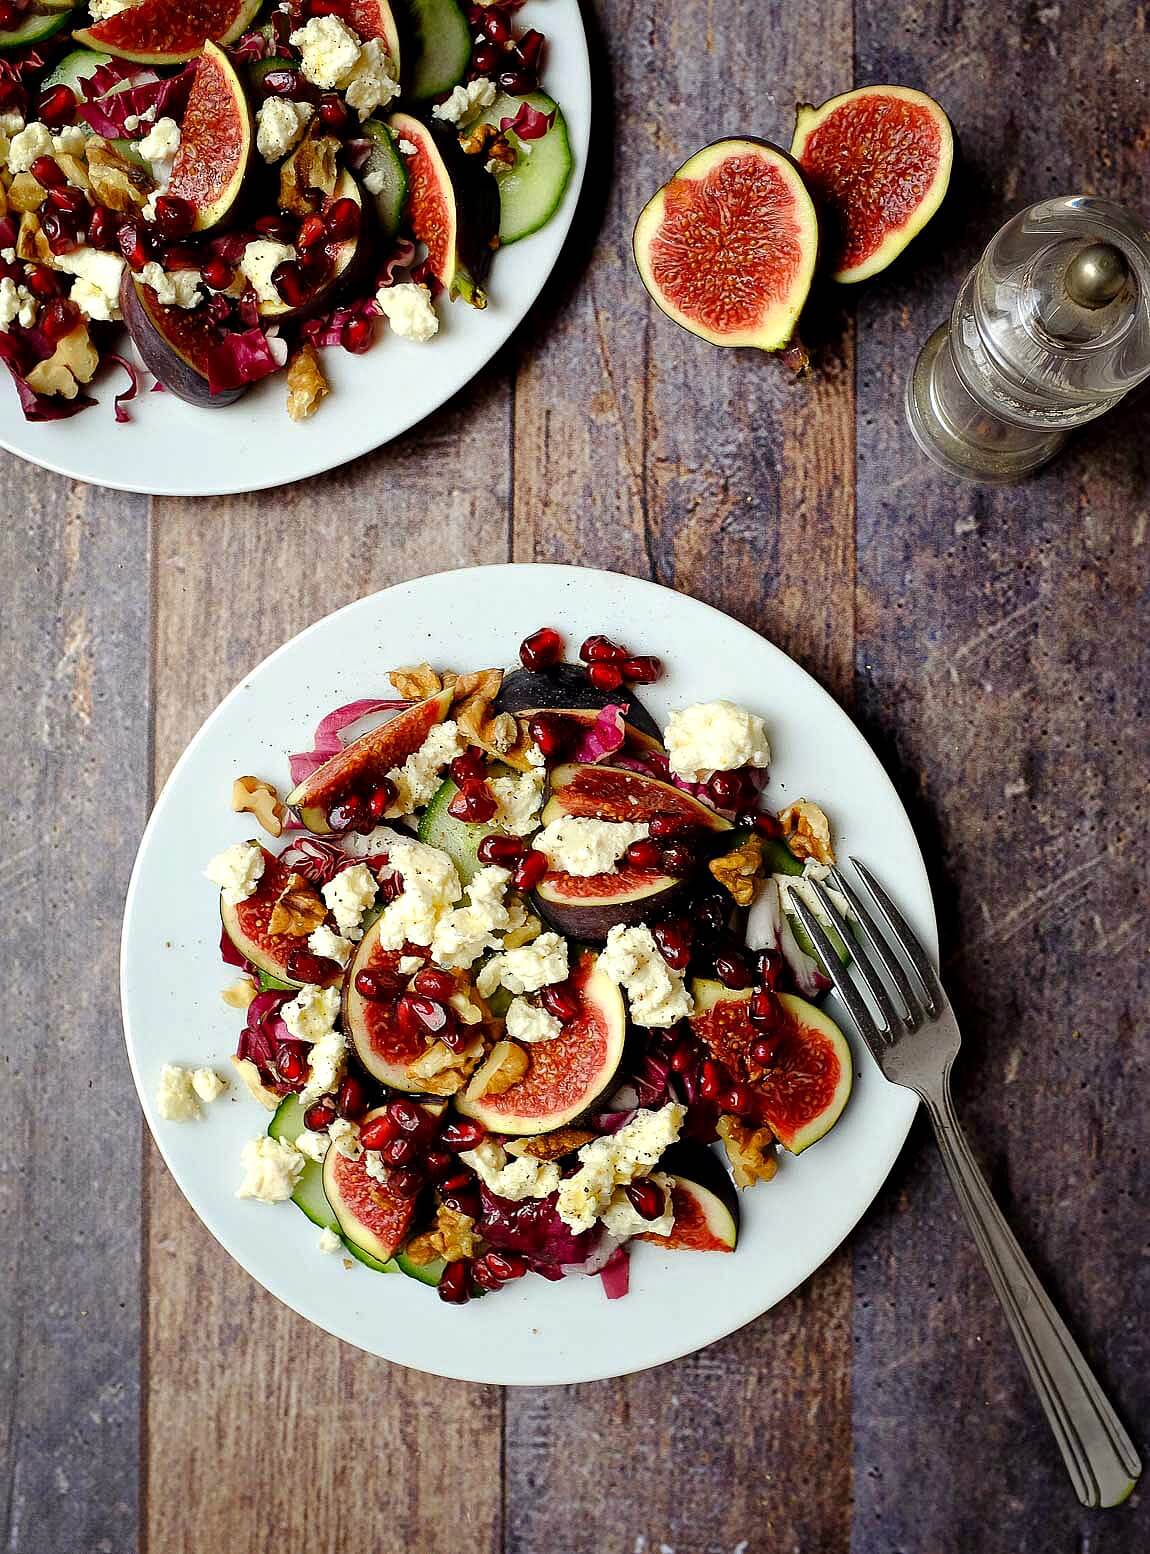 Ein wunderbarer Salat für die kalten Tage: Feigensalat mit Feta, Walnüssen und einem fruchtigen Granatapfel-Dressing. Schnell und einfach zubereitet. Ein kleiner Vitaminboost im Winter